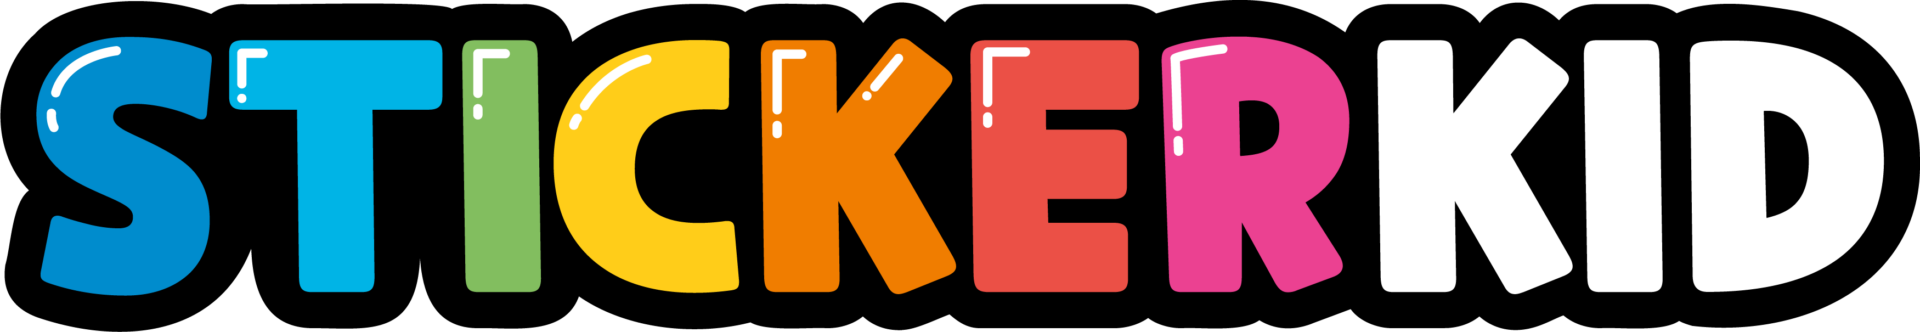 Logo Stickerkid